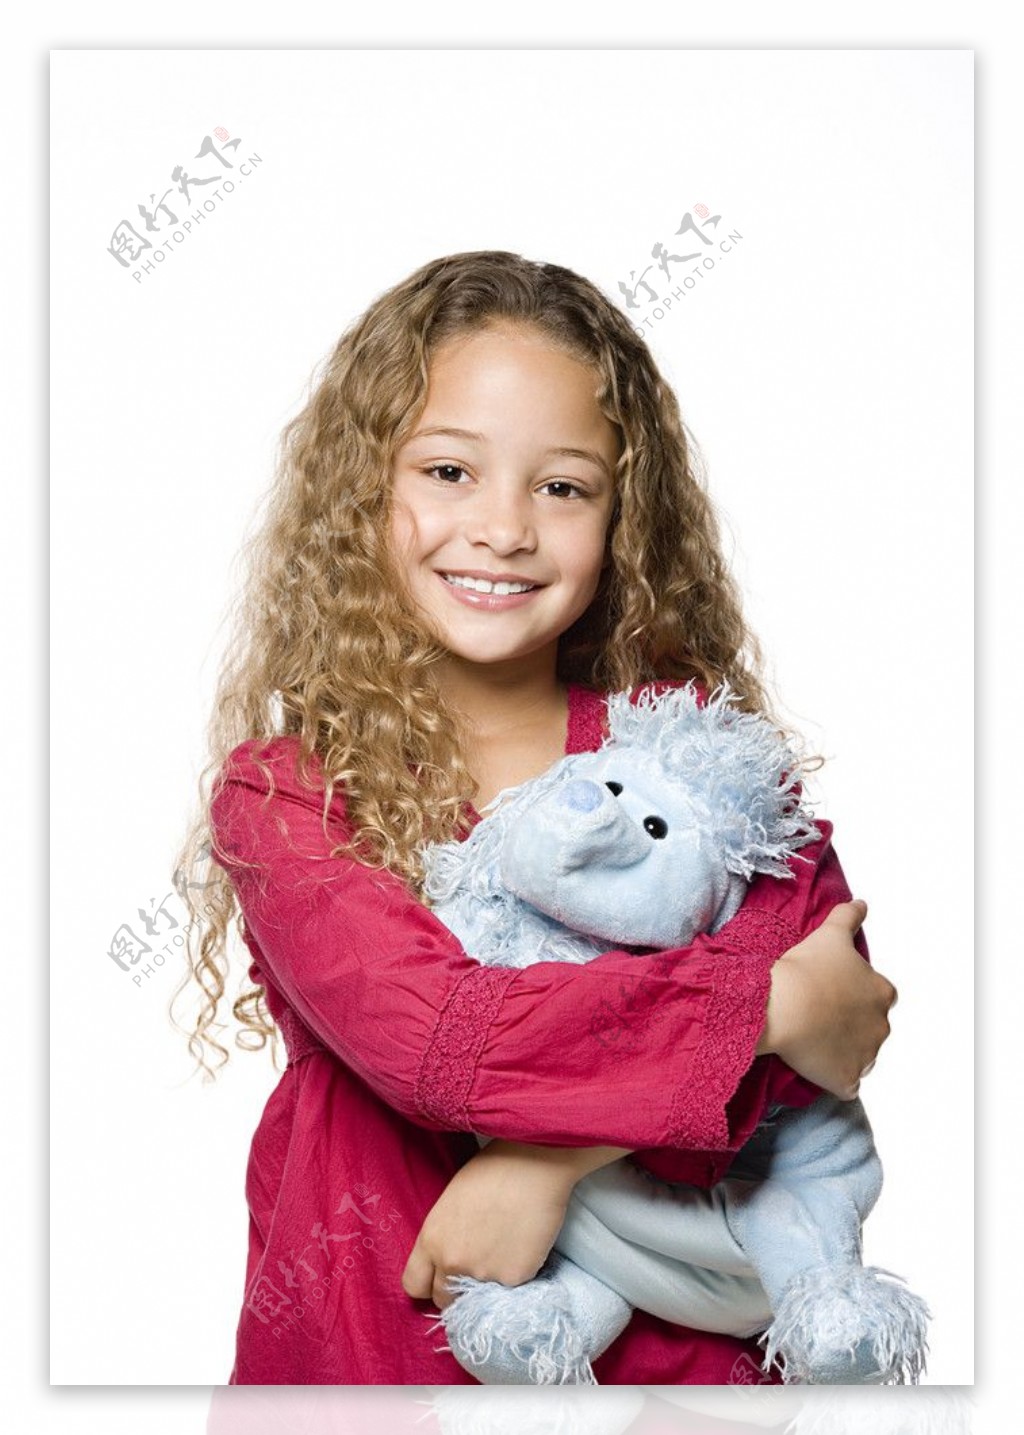 抱着布娃娃的漂亮小女孩图片